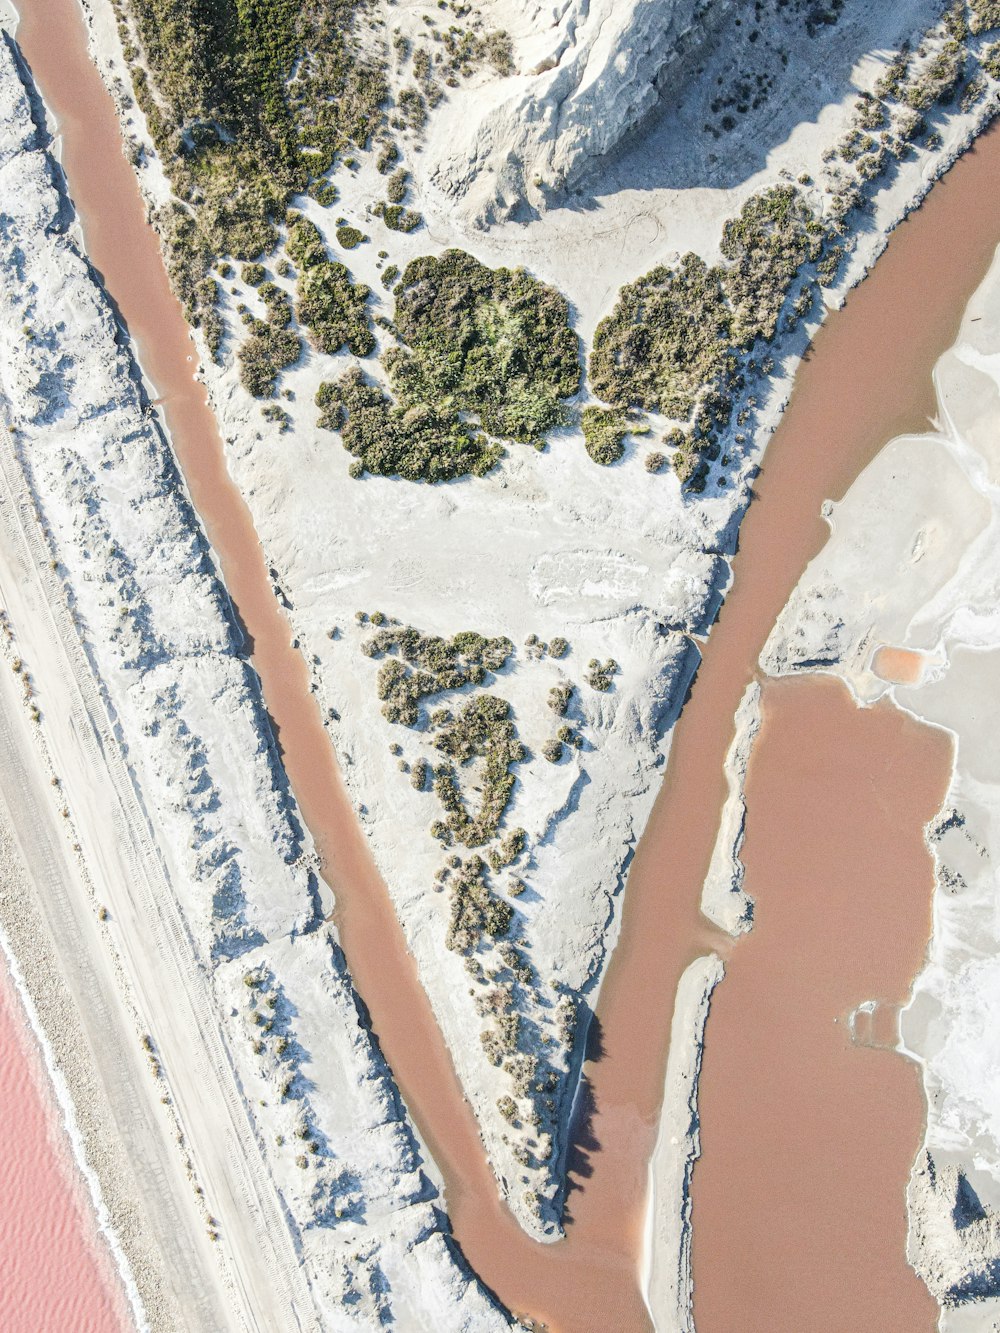 日中の水域の航空写真